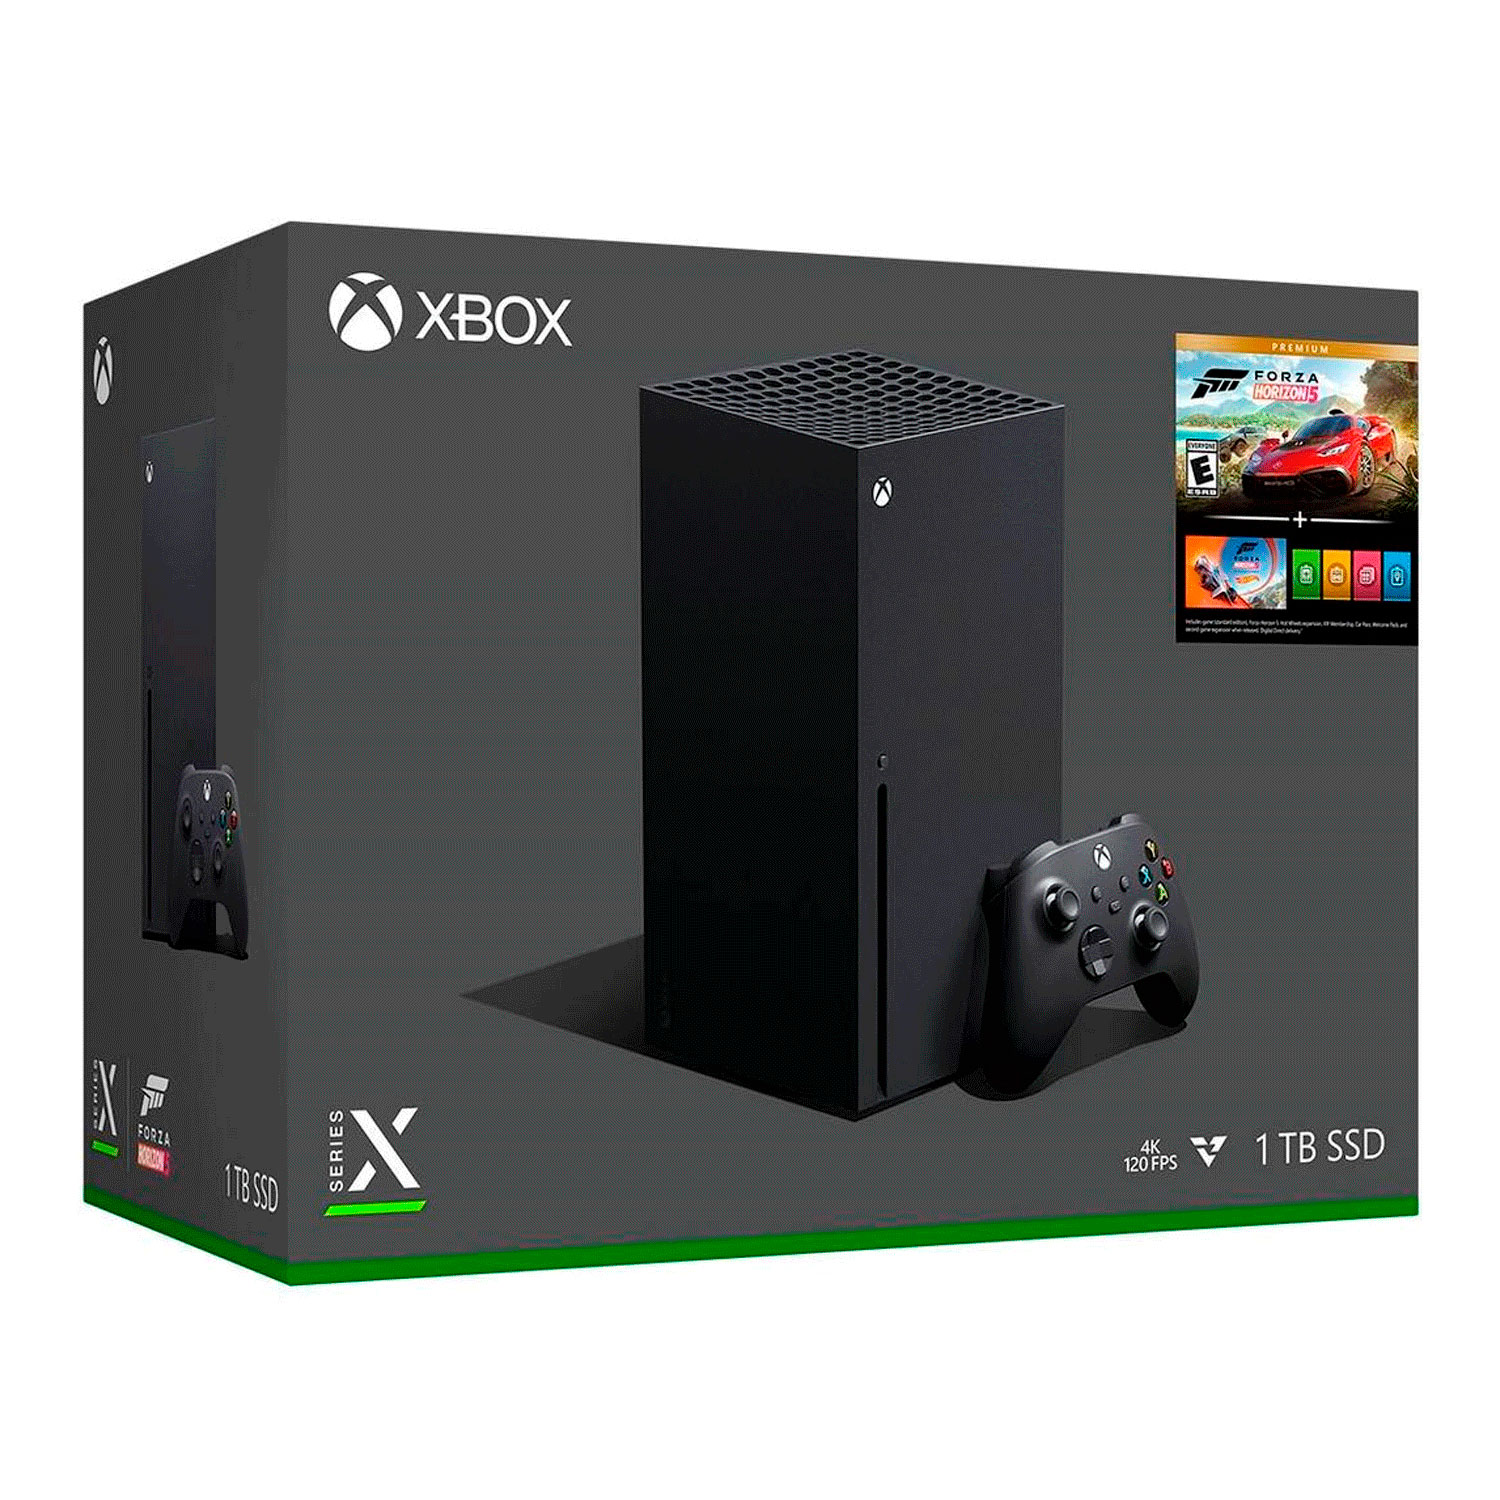 Console Microsoft Xbox One Series X Forza Horizon 5 Bundle 1TB SSD - Preto - (Caixa Danificada)